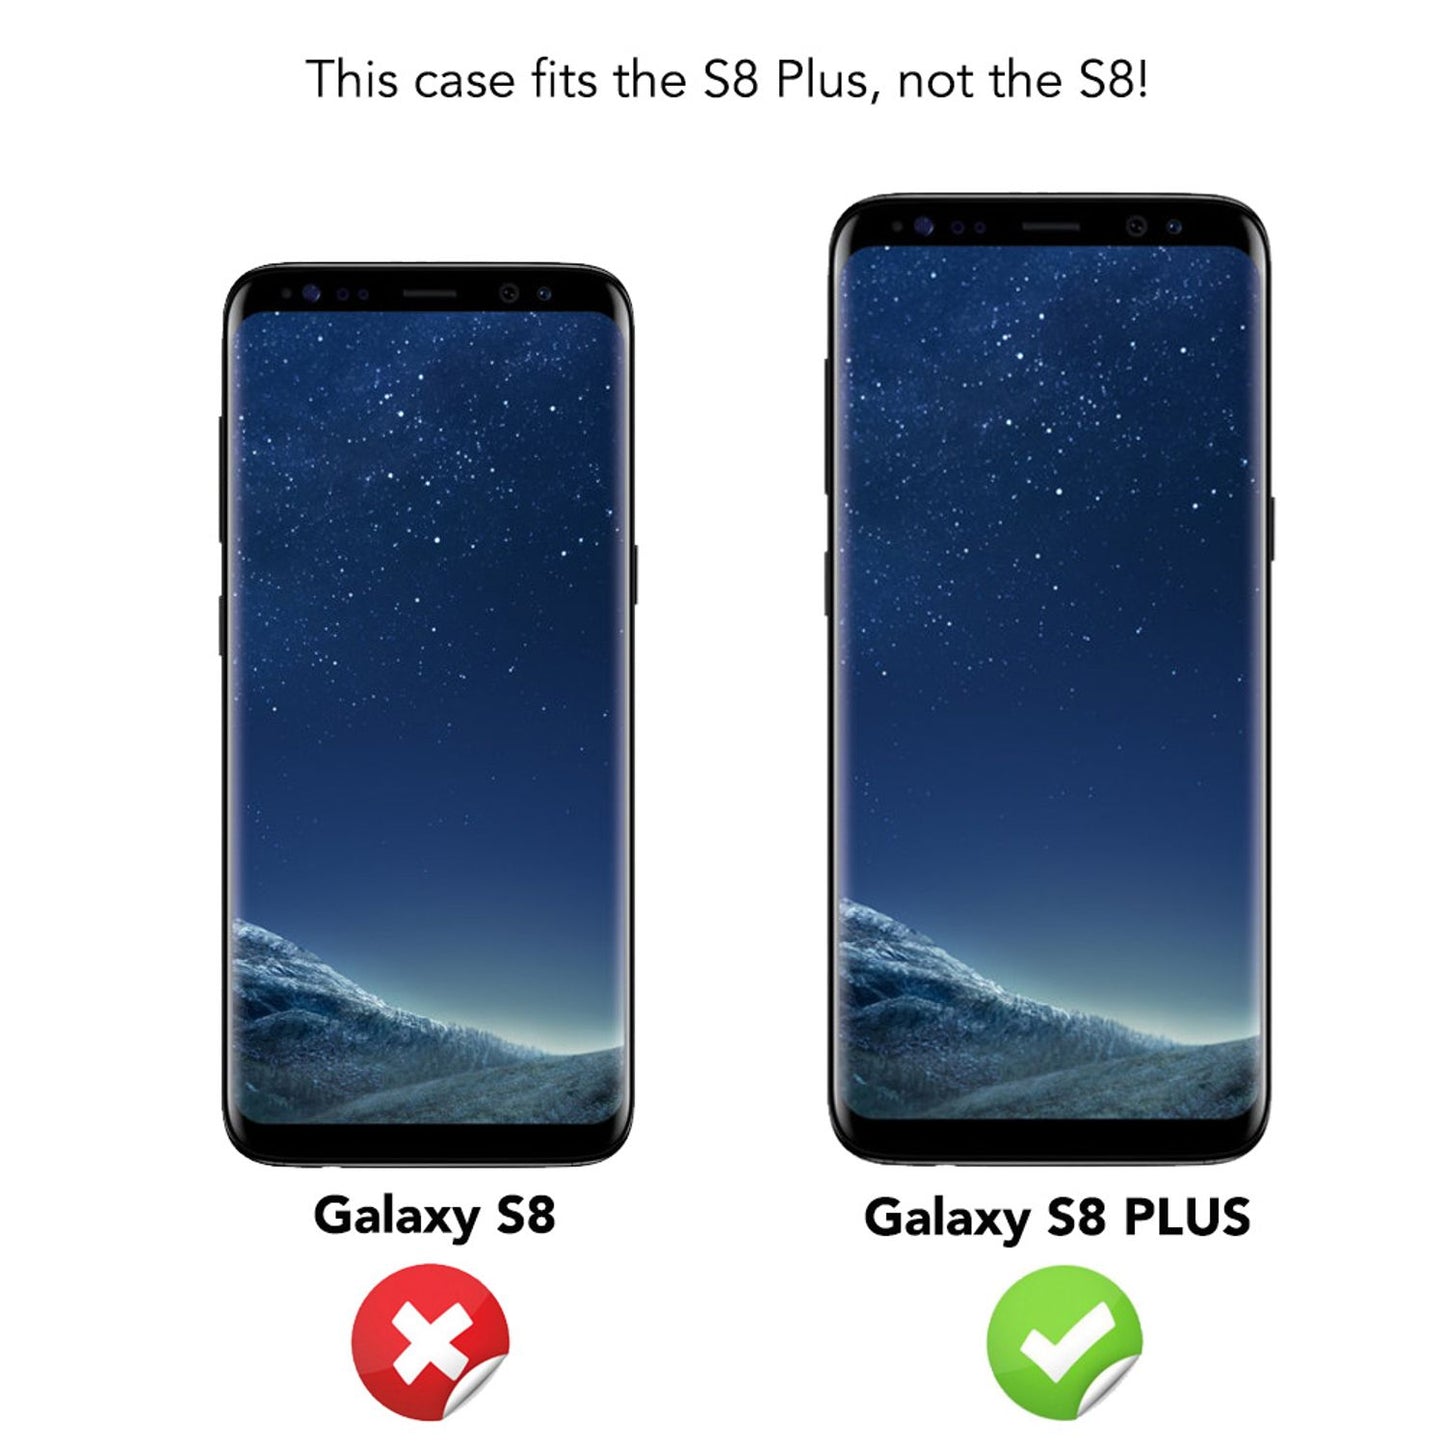 Samsung Galaxy S8 Plus Hülle Handyhülle von NALIA, Glitzer Case Schutzhülle Cover